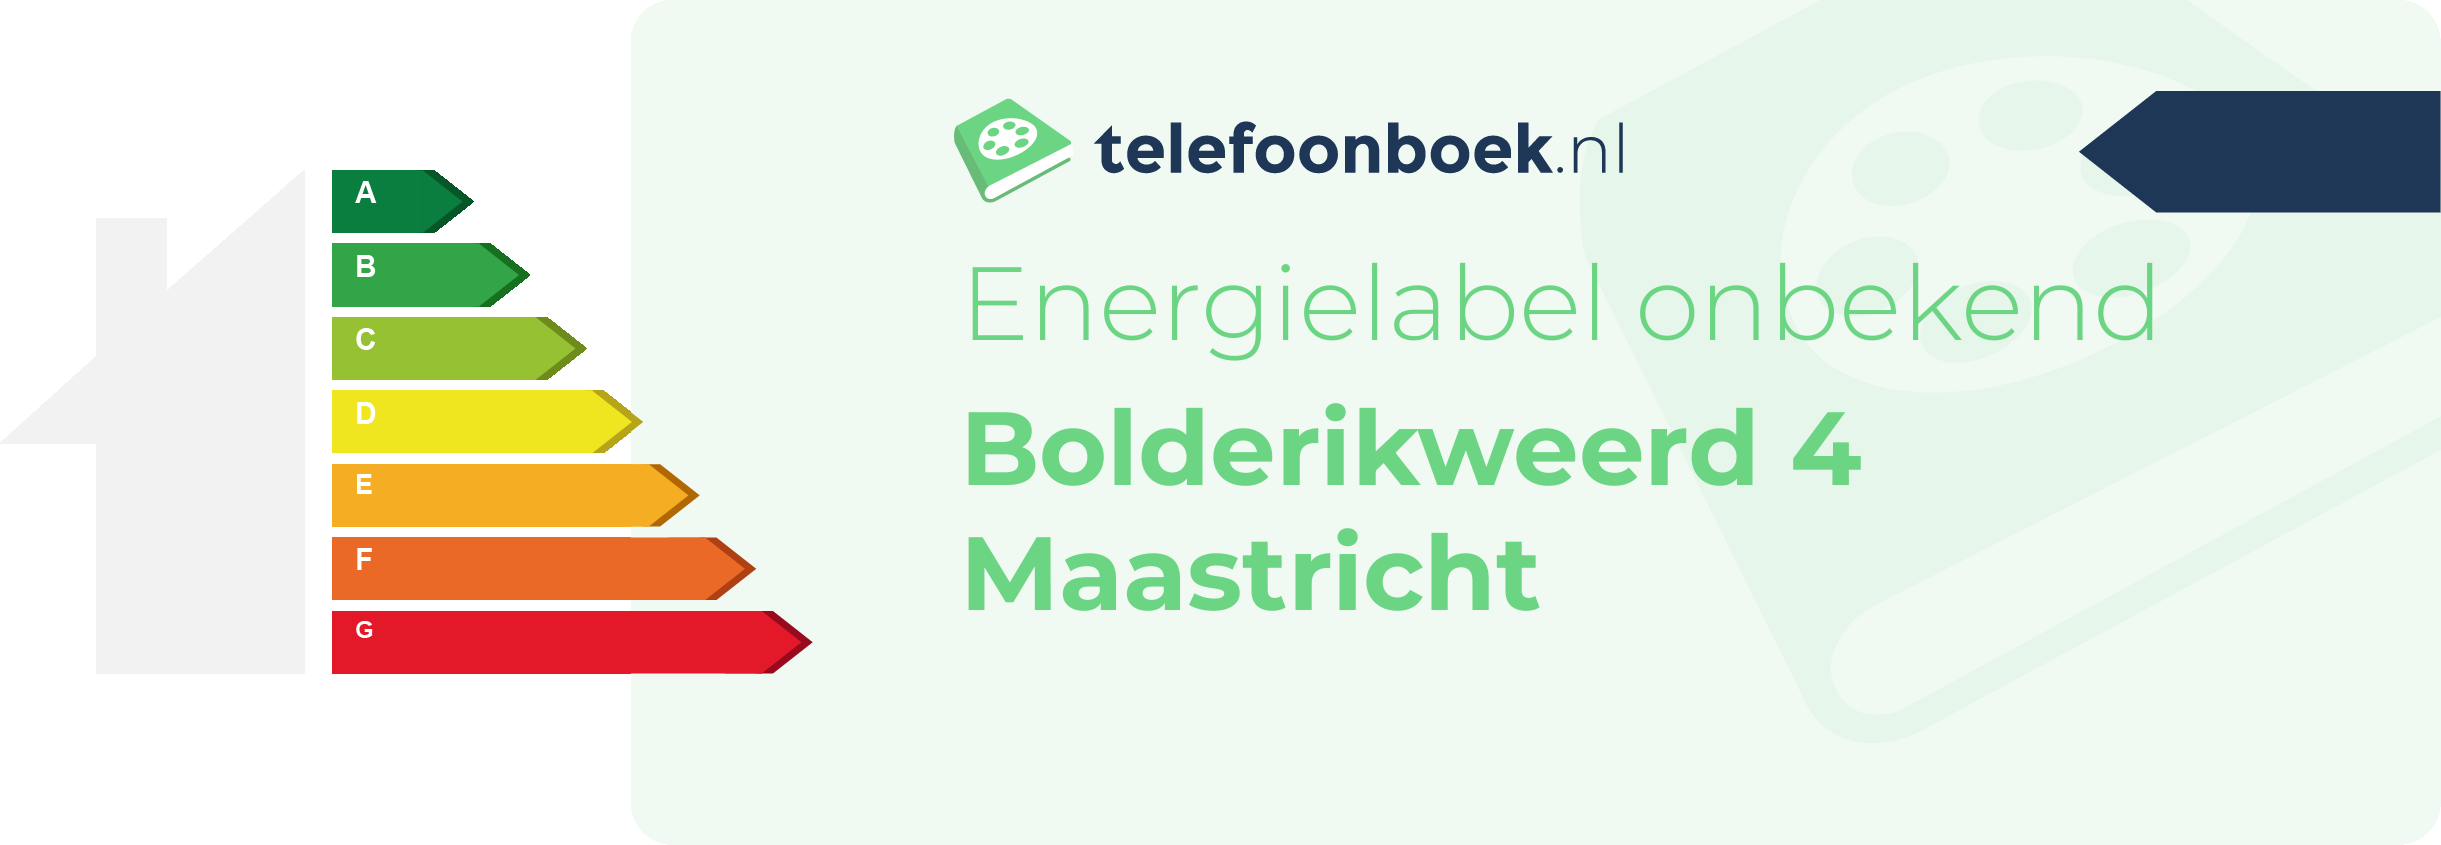 Energielabel Bolderikweerd 4 Maastricht